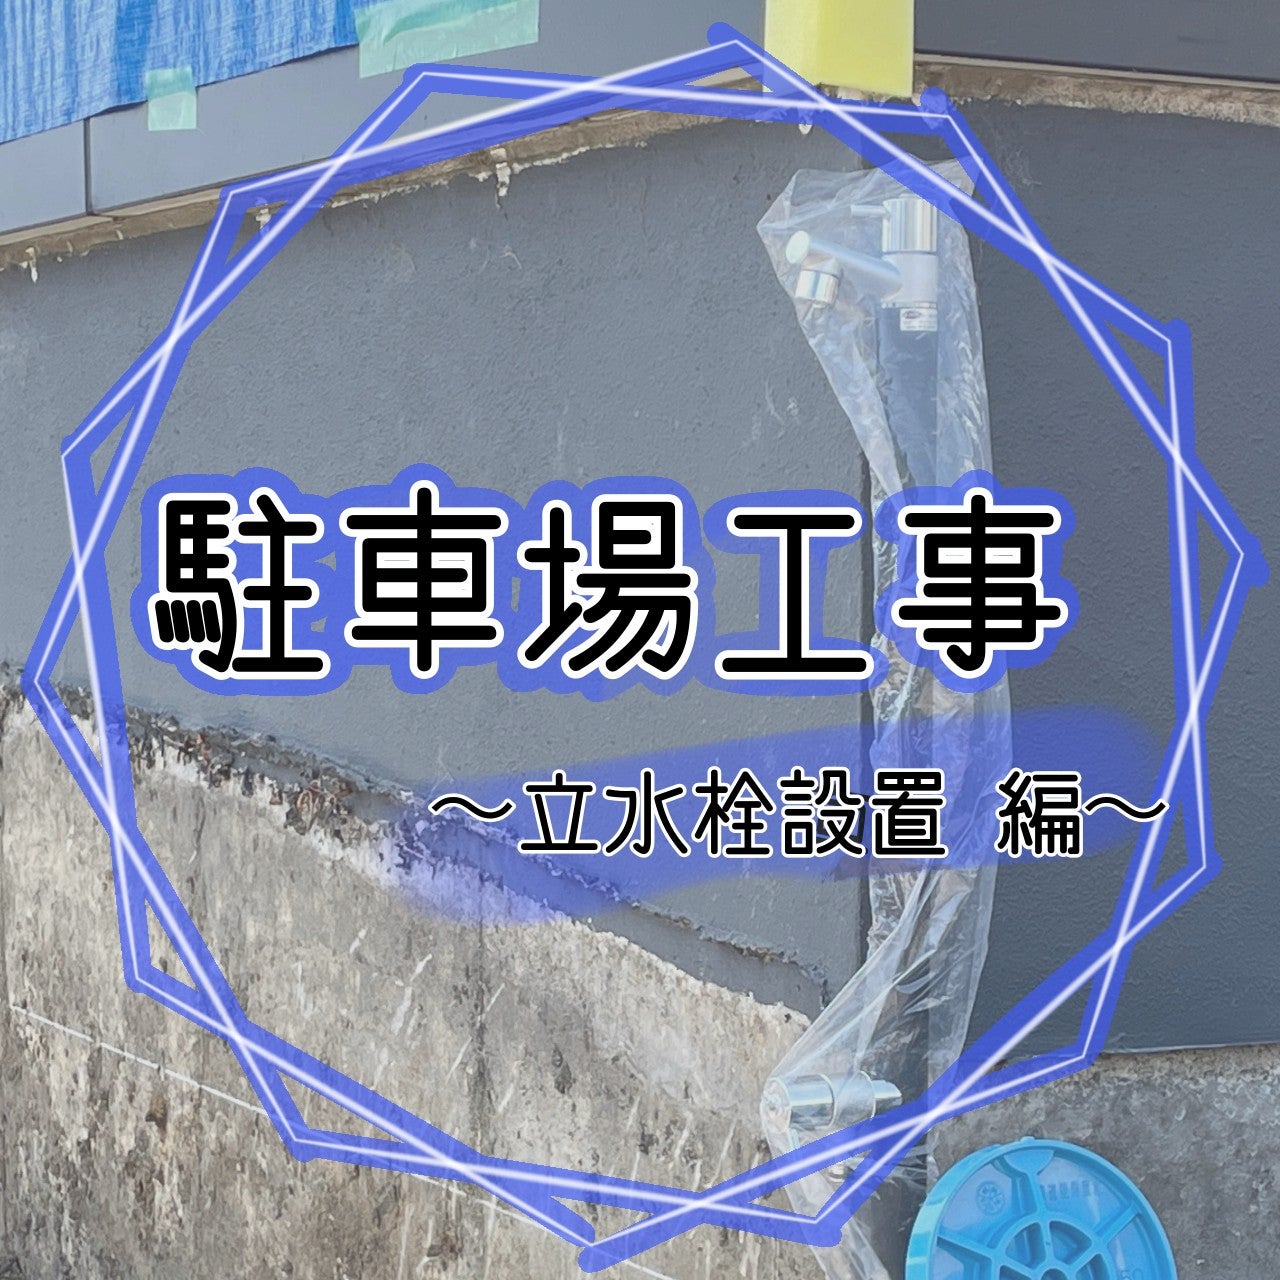 【厚木ビル工事】新規水栓設置